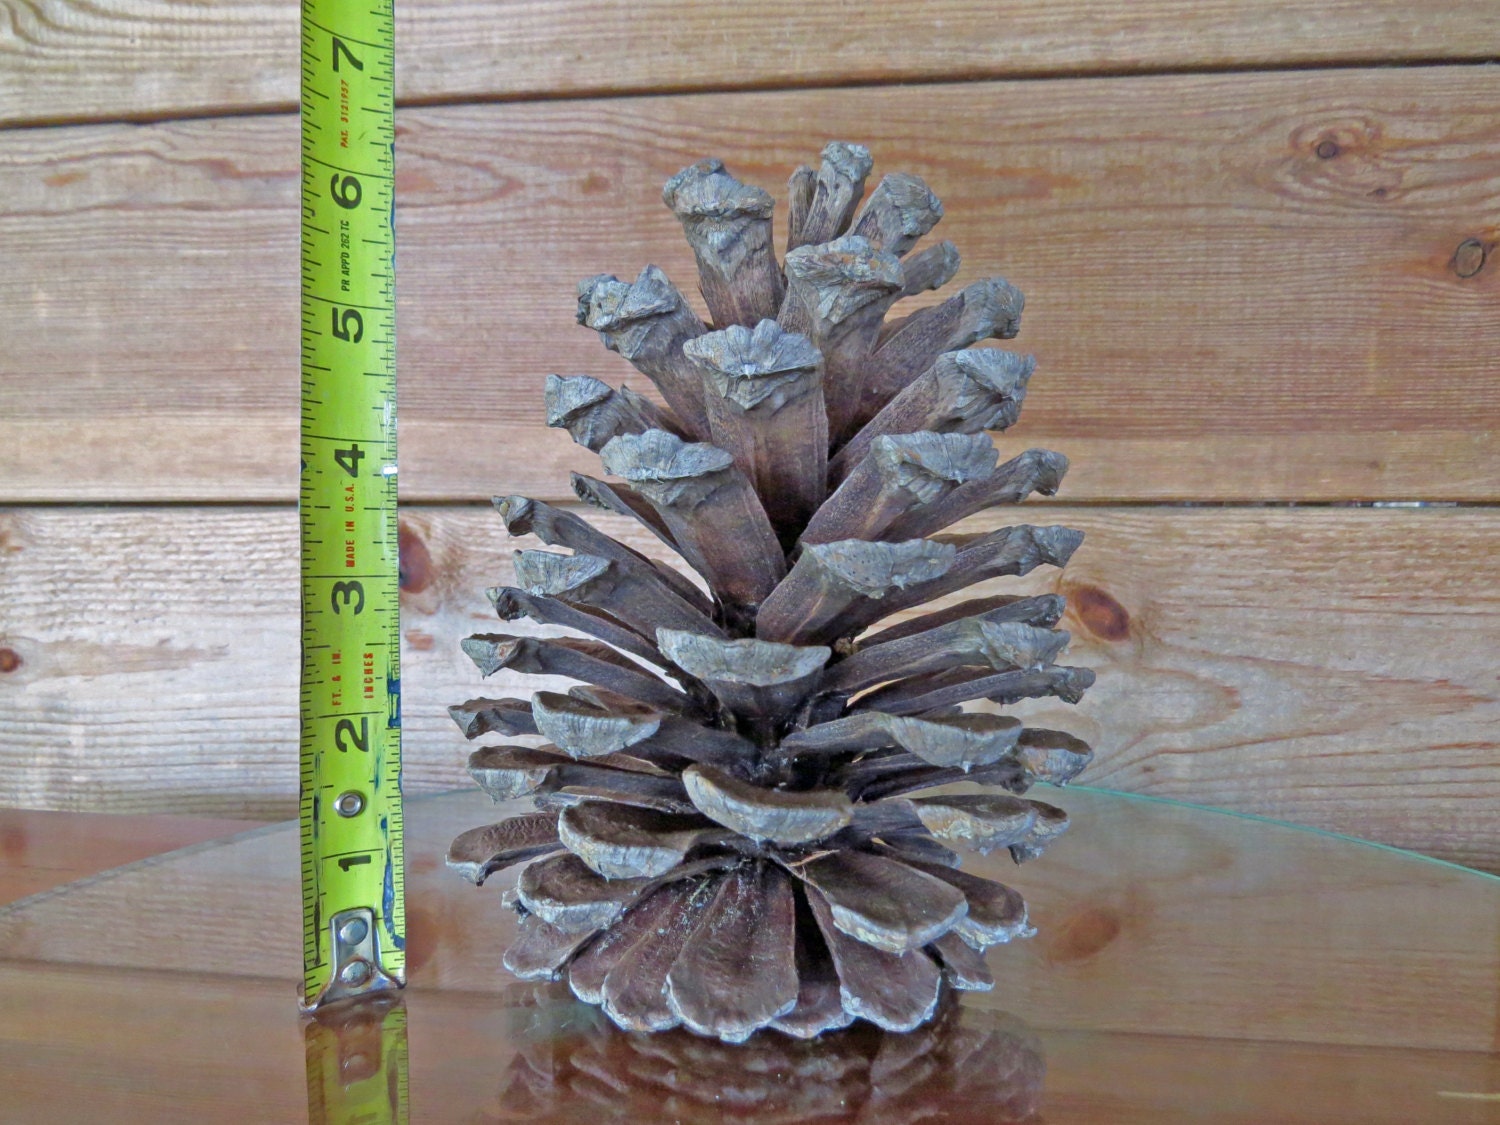 huge pinecones